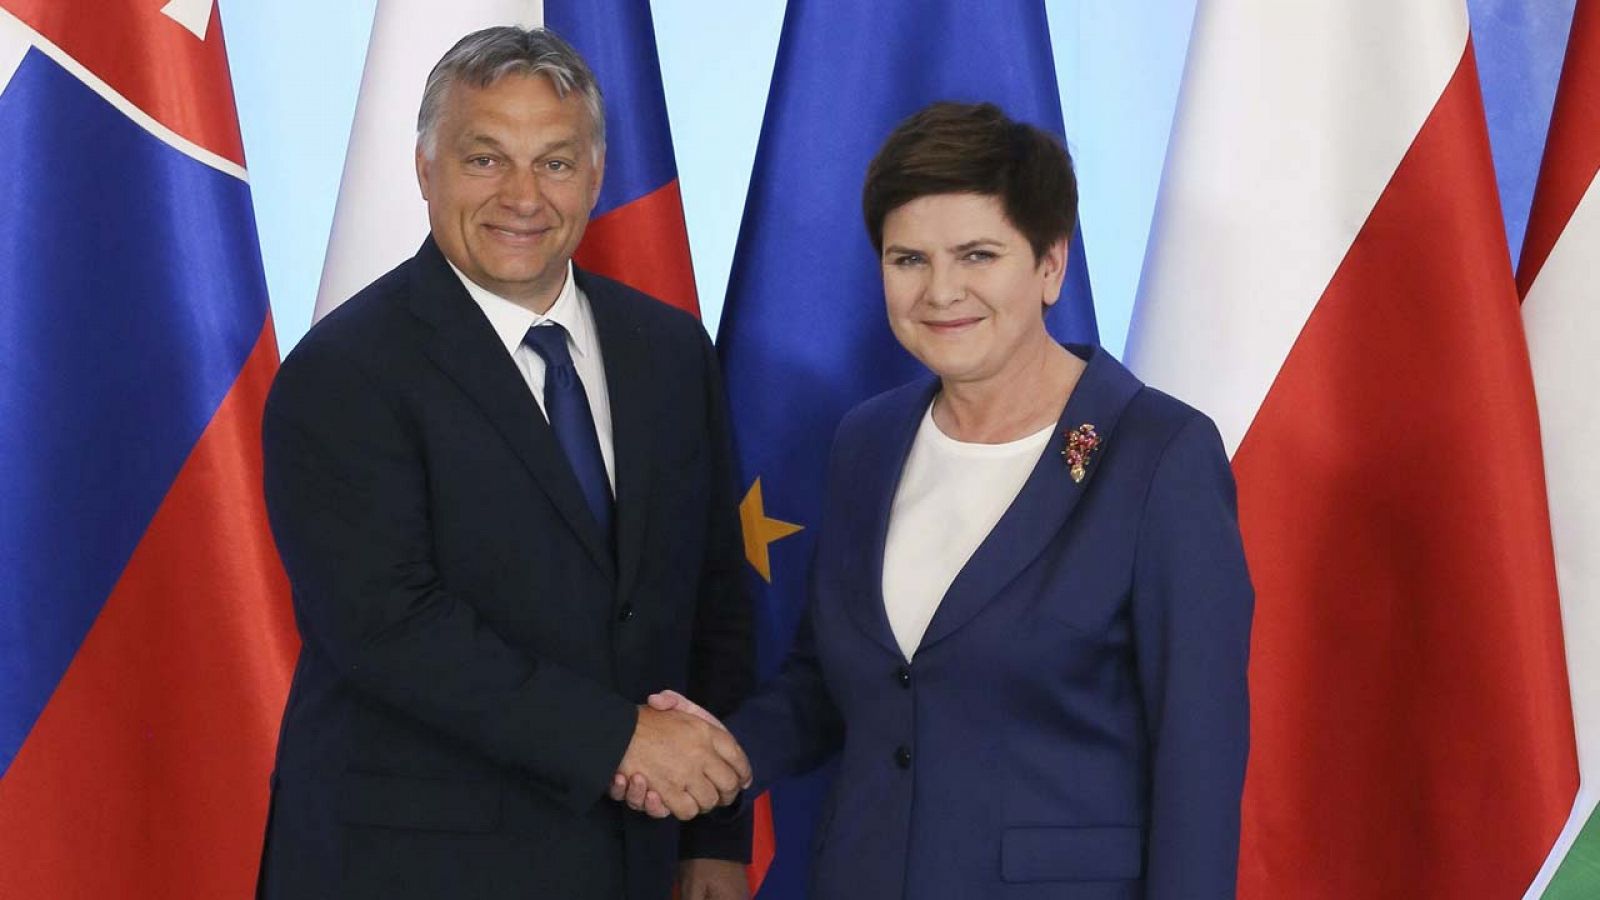 Viktor Orbán, primer ministro húngaro y Beata Szydlo, primera ministra polaca, antes de la reunión del Grupo de Visegrado en Varsovia este jueves